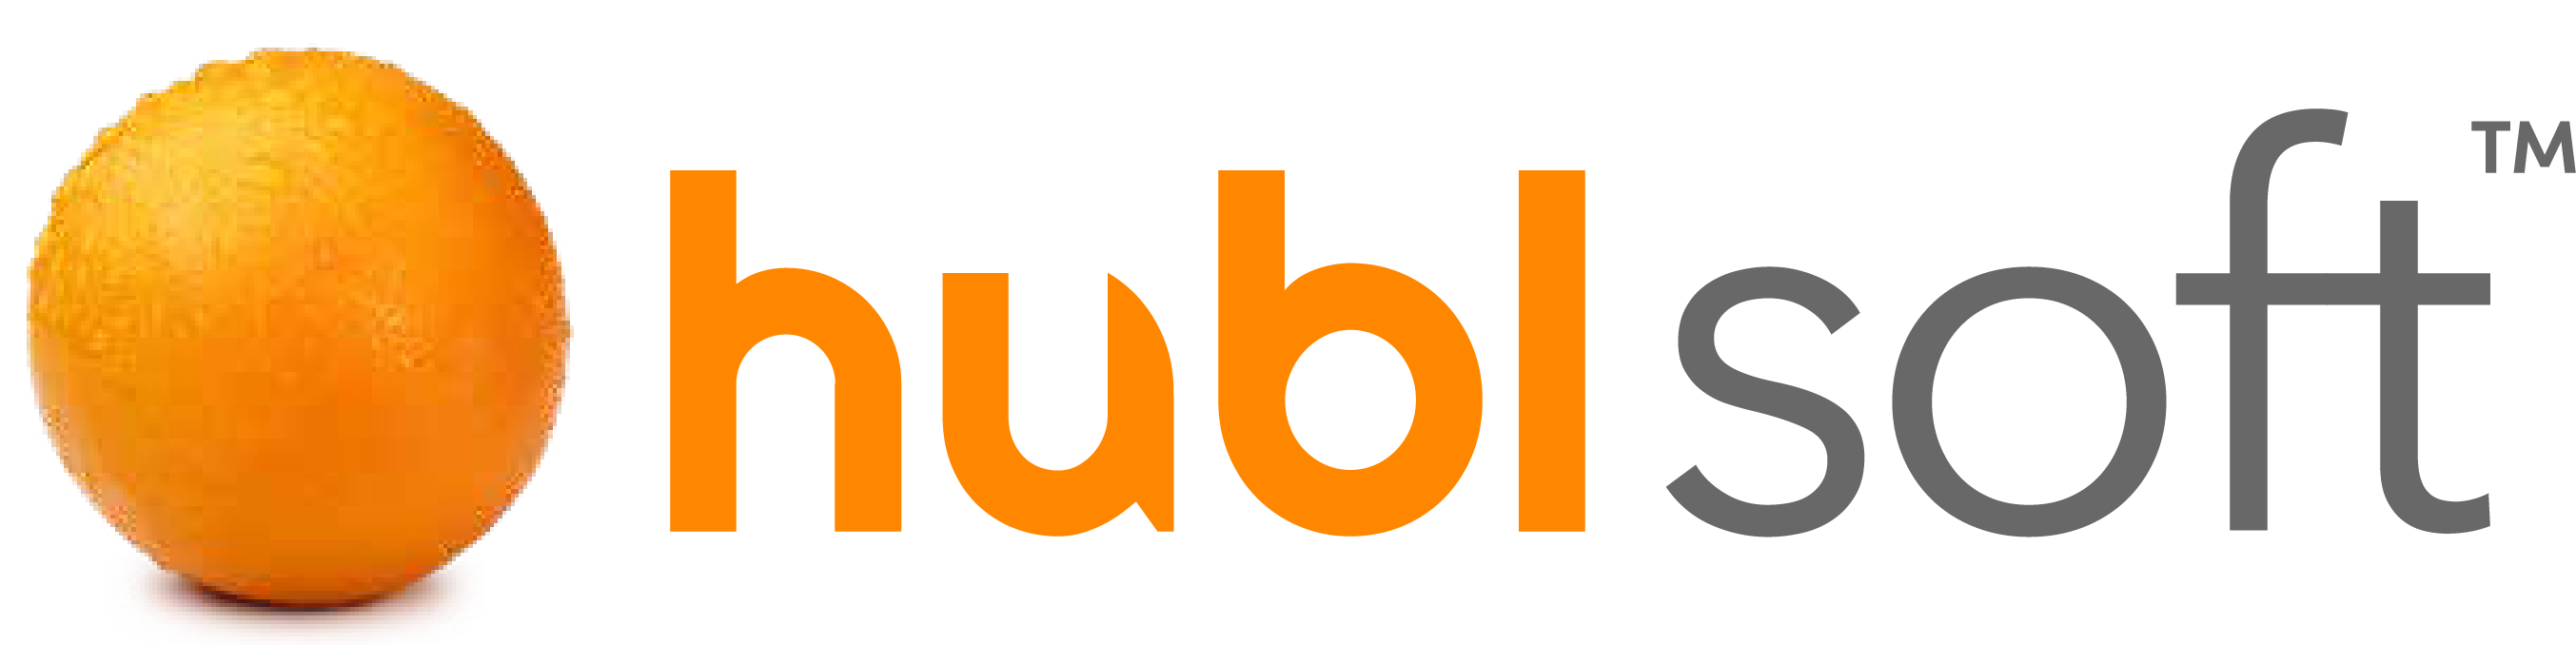 hublsoft logo - no strapline